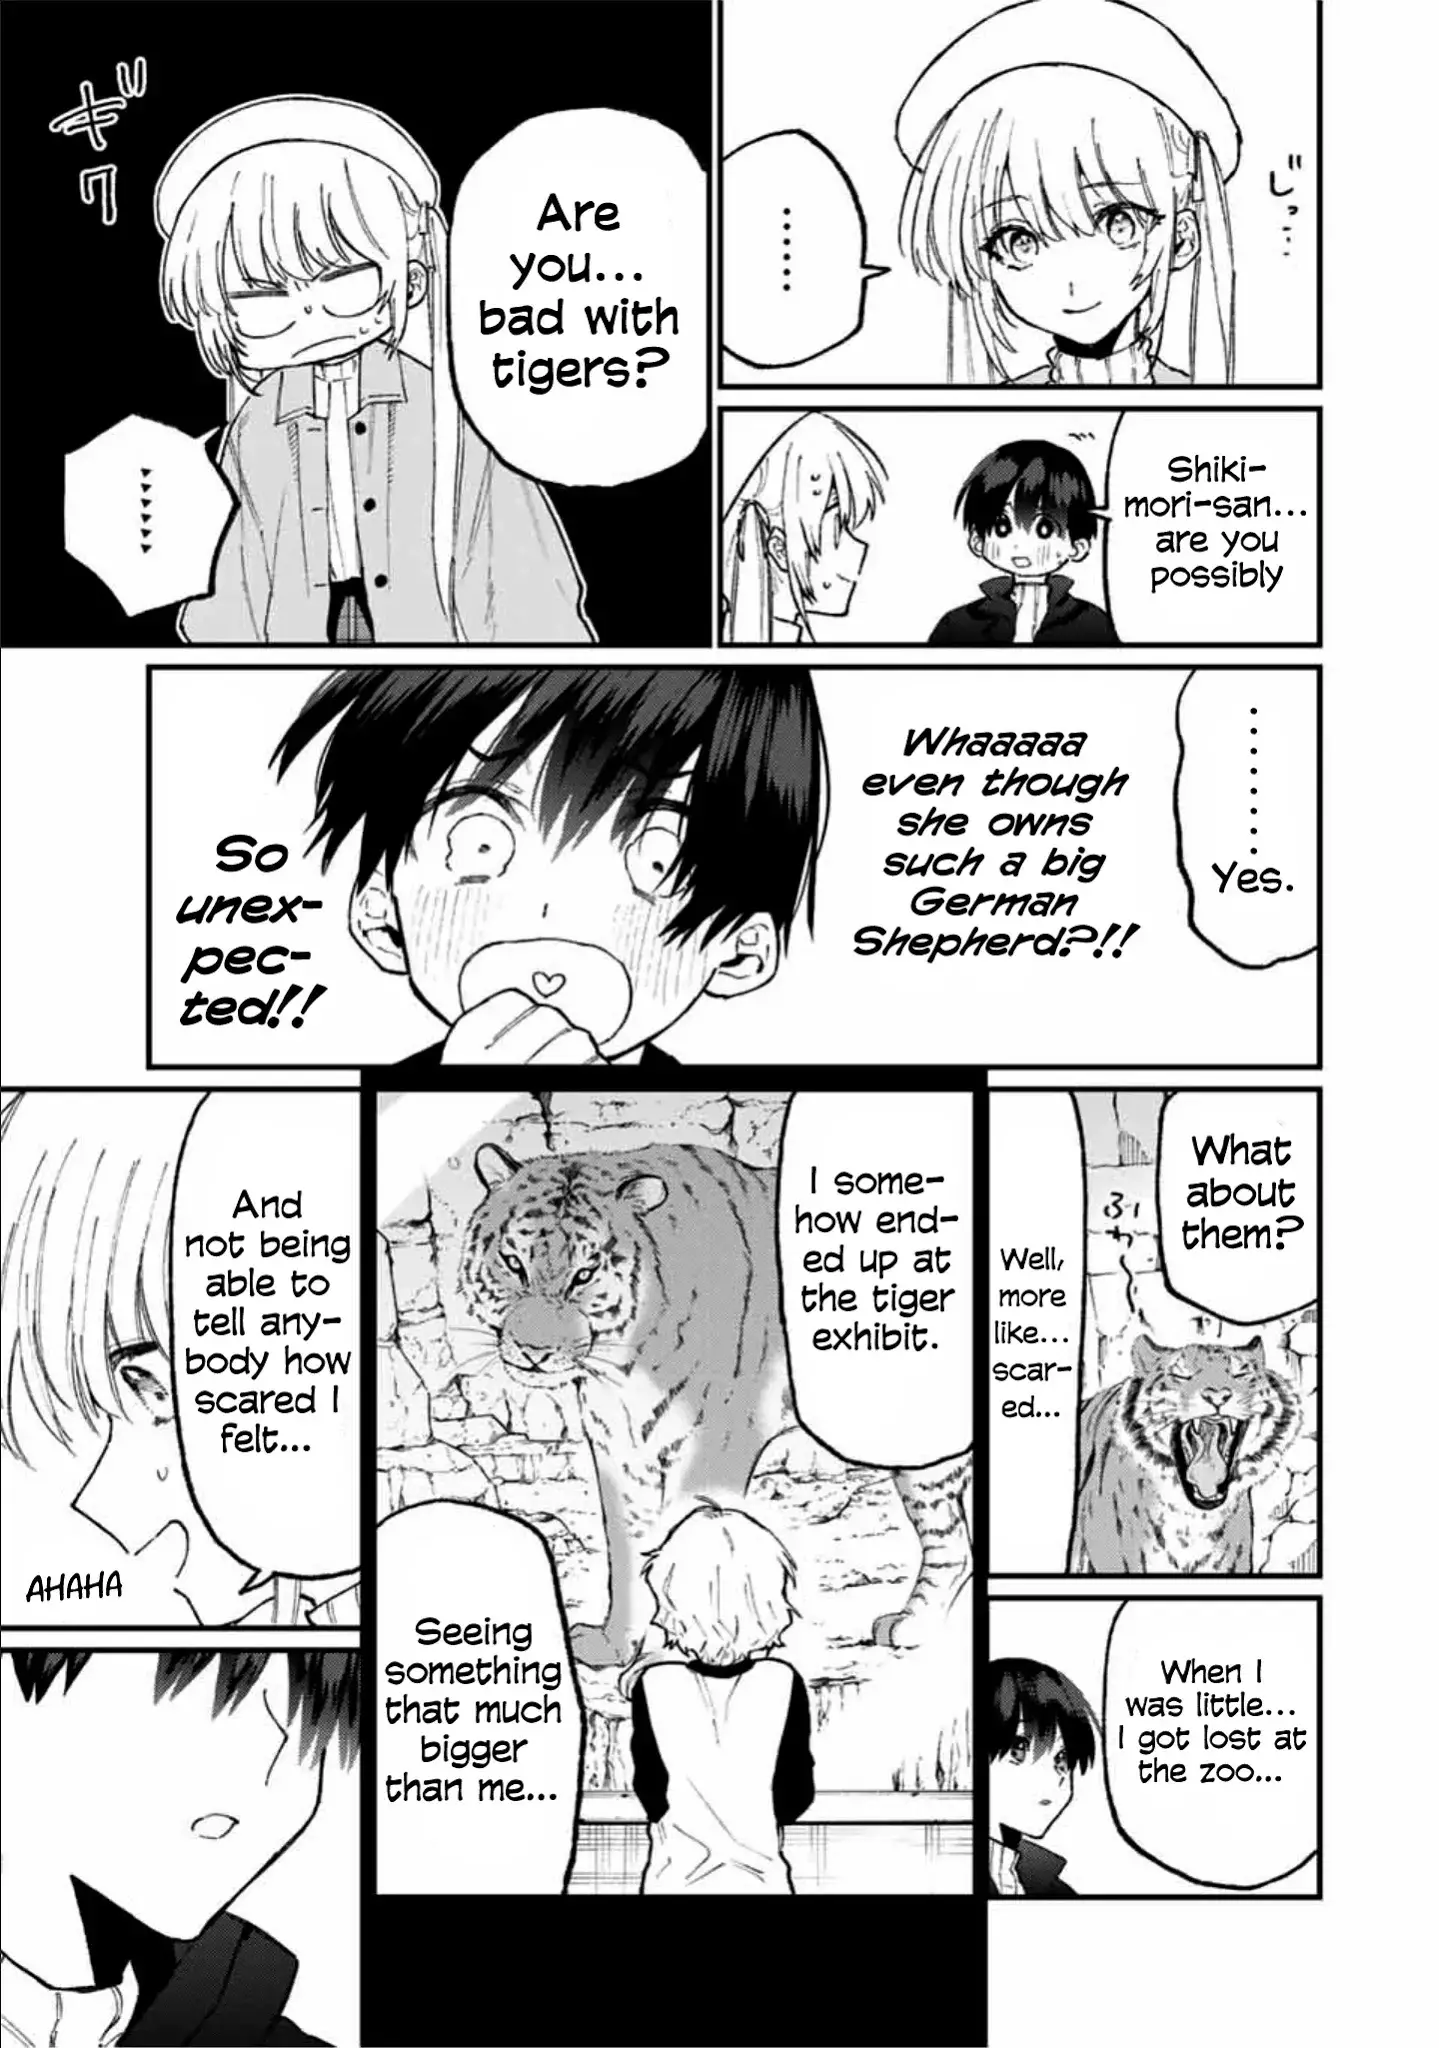 Shikimori's Not Just A Cutie - 81 page 8